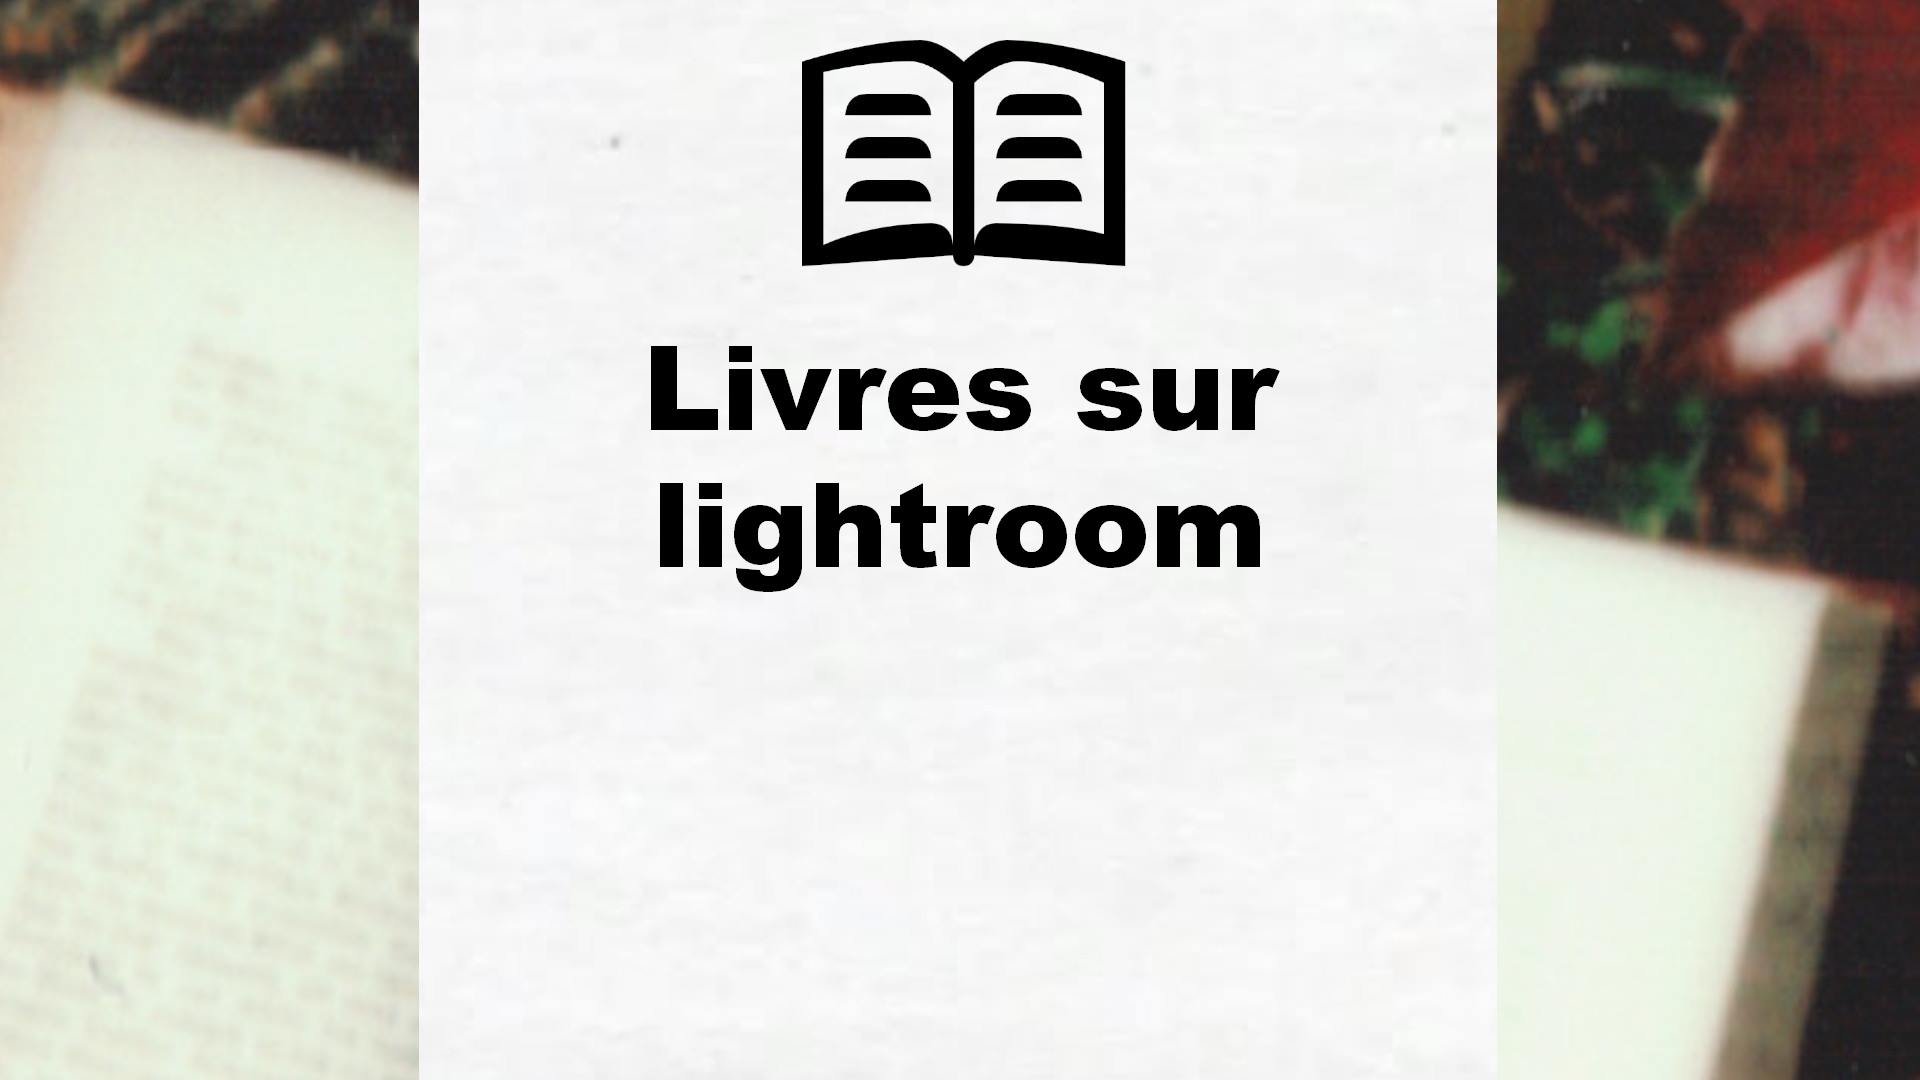 Livres sur lightroom